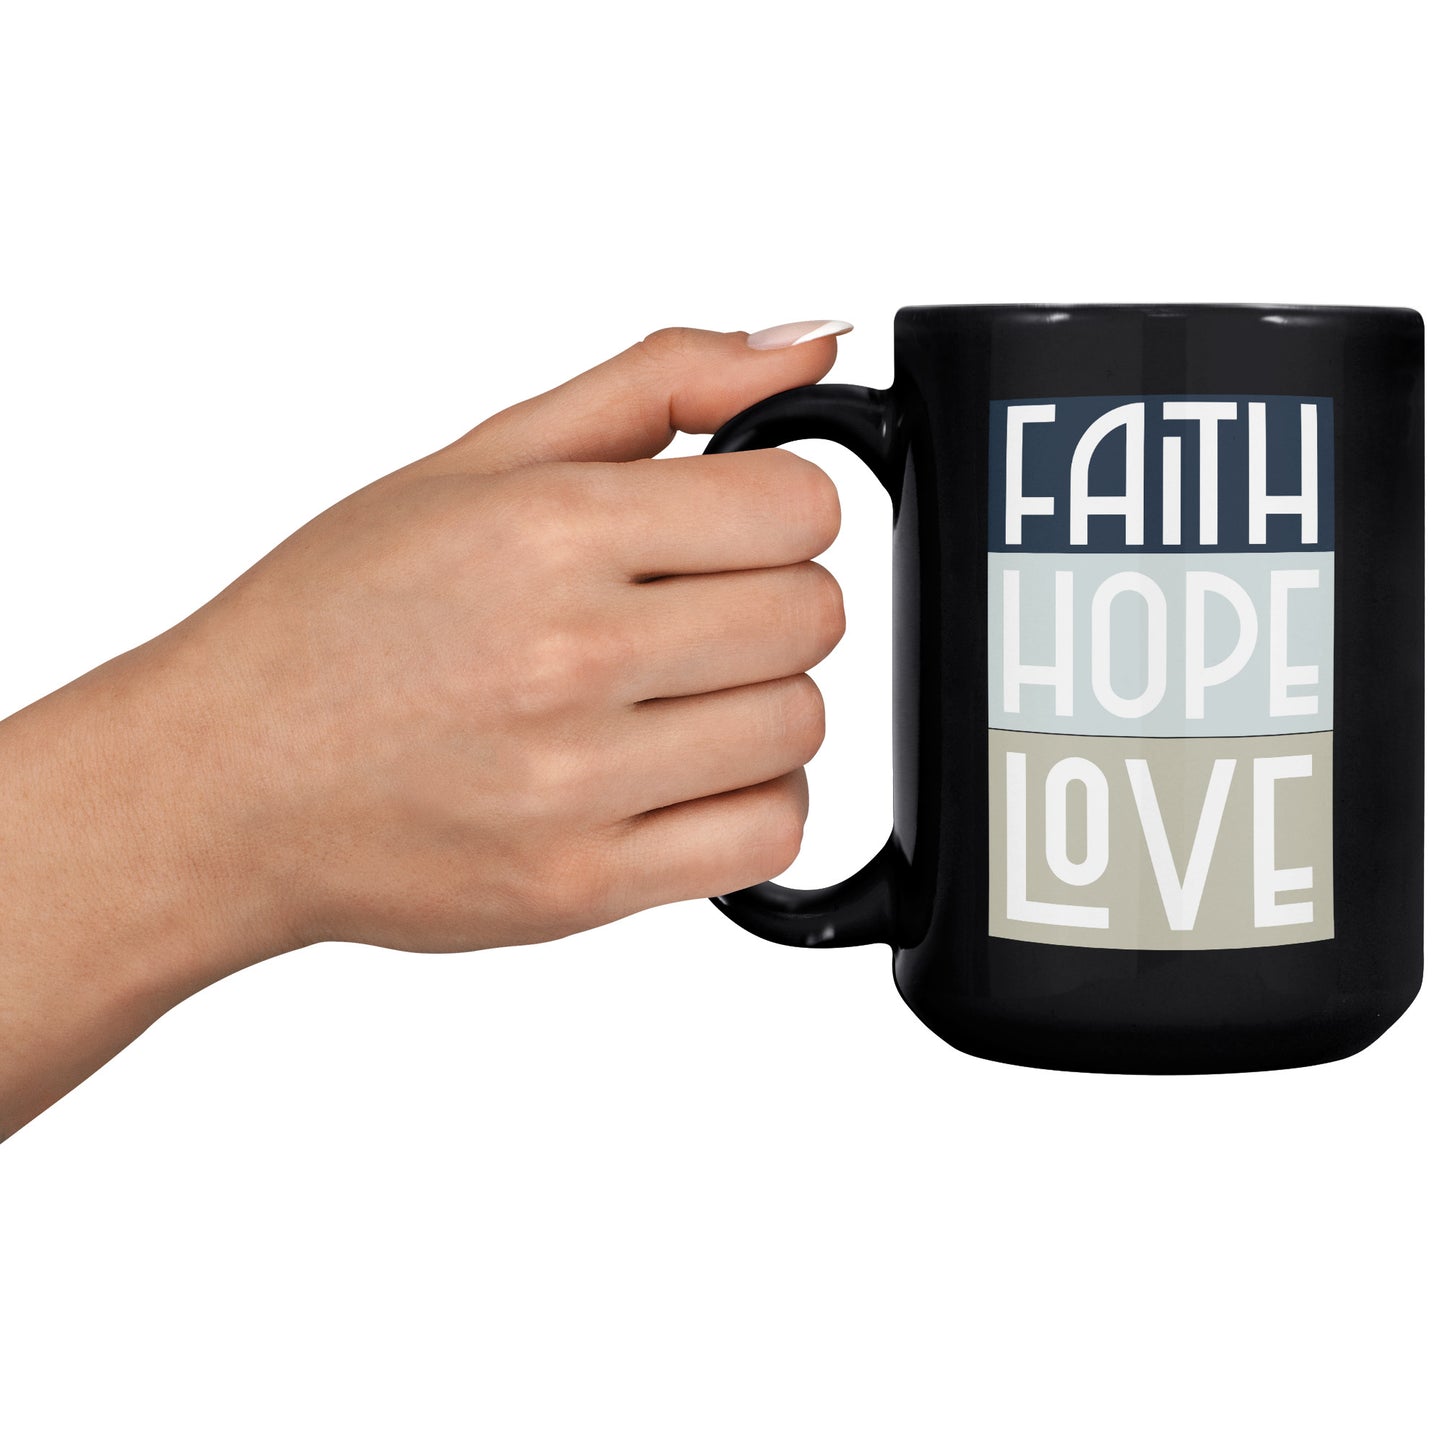 Faith Hope Love 15 oz Black Ceramic Mug